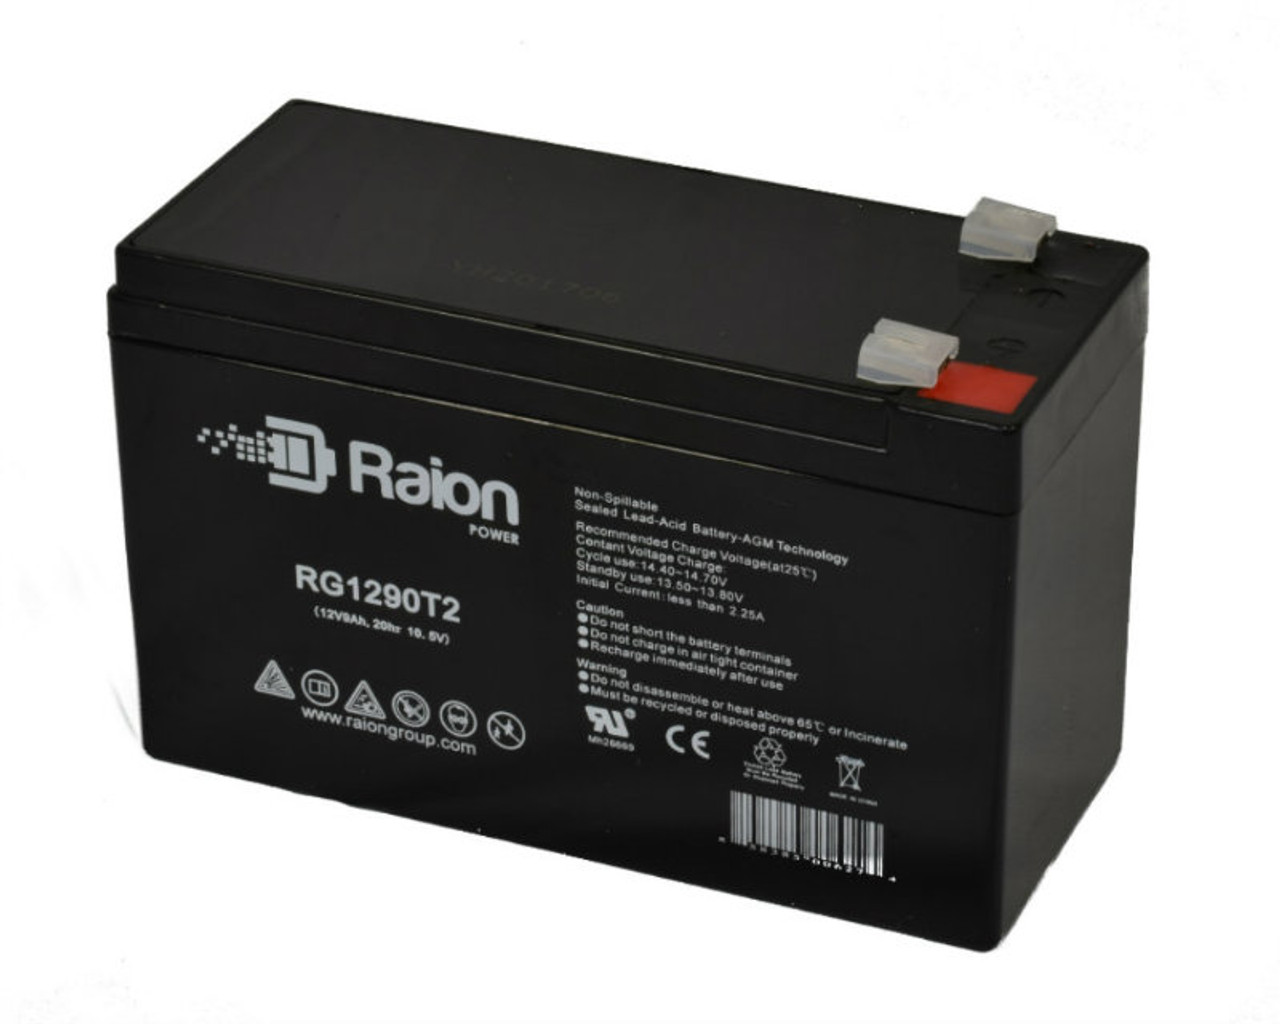 Raion Power RG1290T2 12V 9Ah AGM Battery for Saft PHYSIOLOGICAL MON